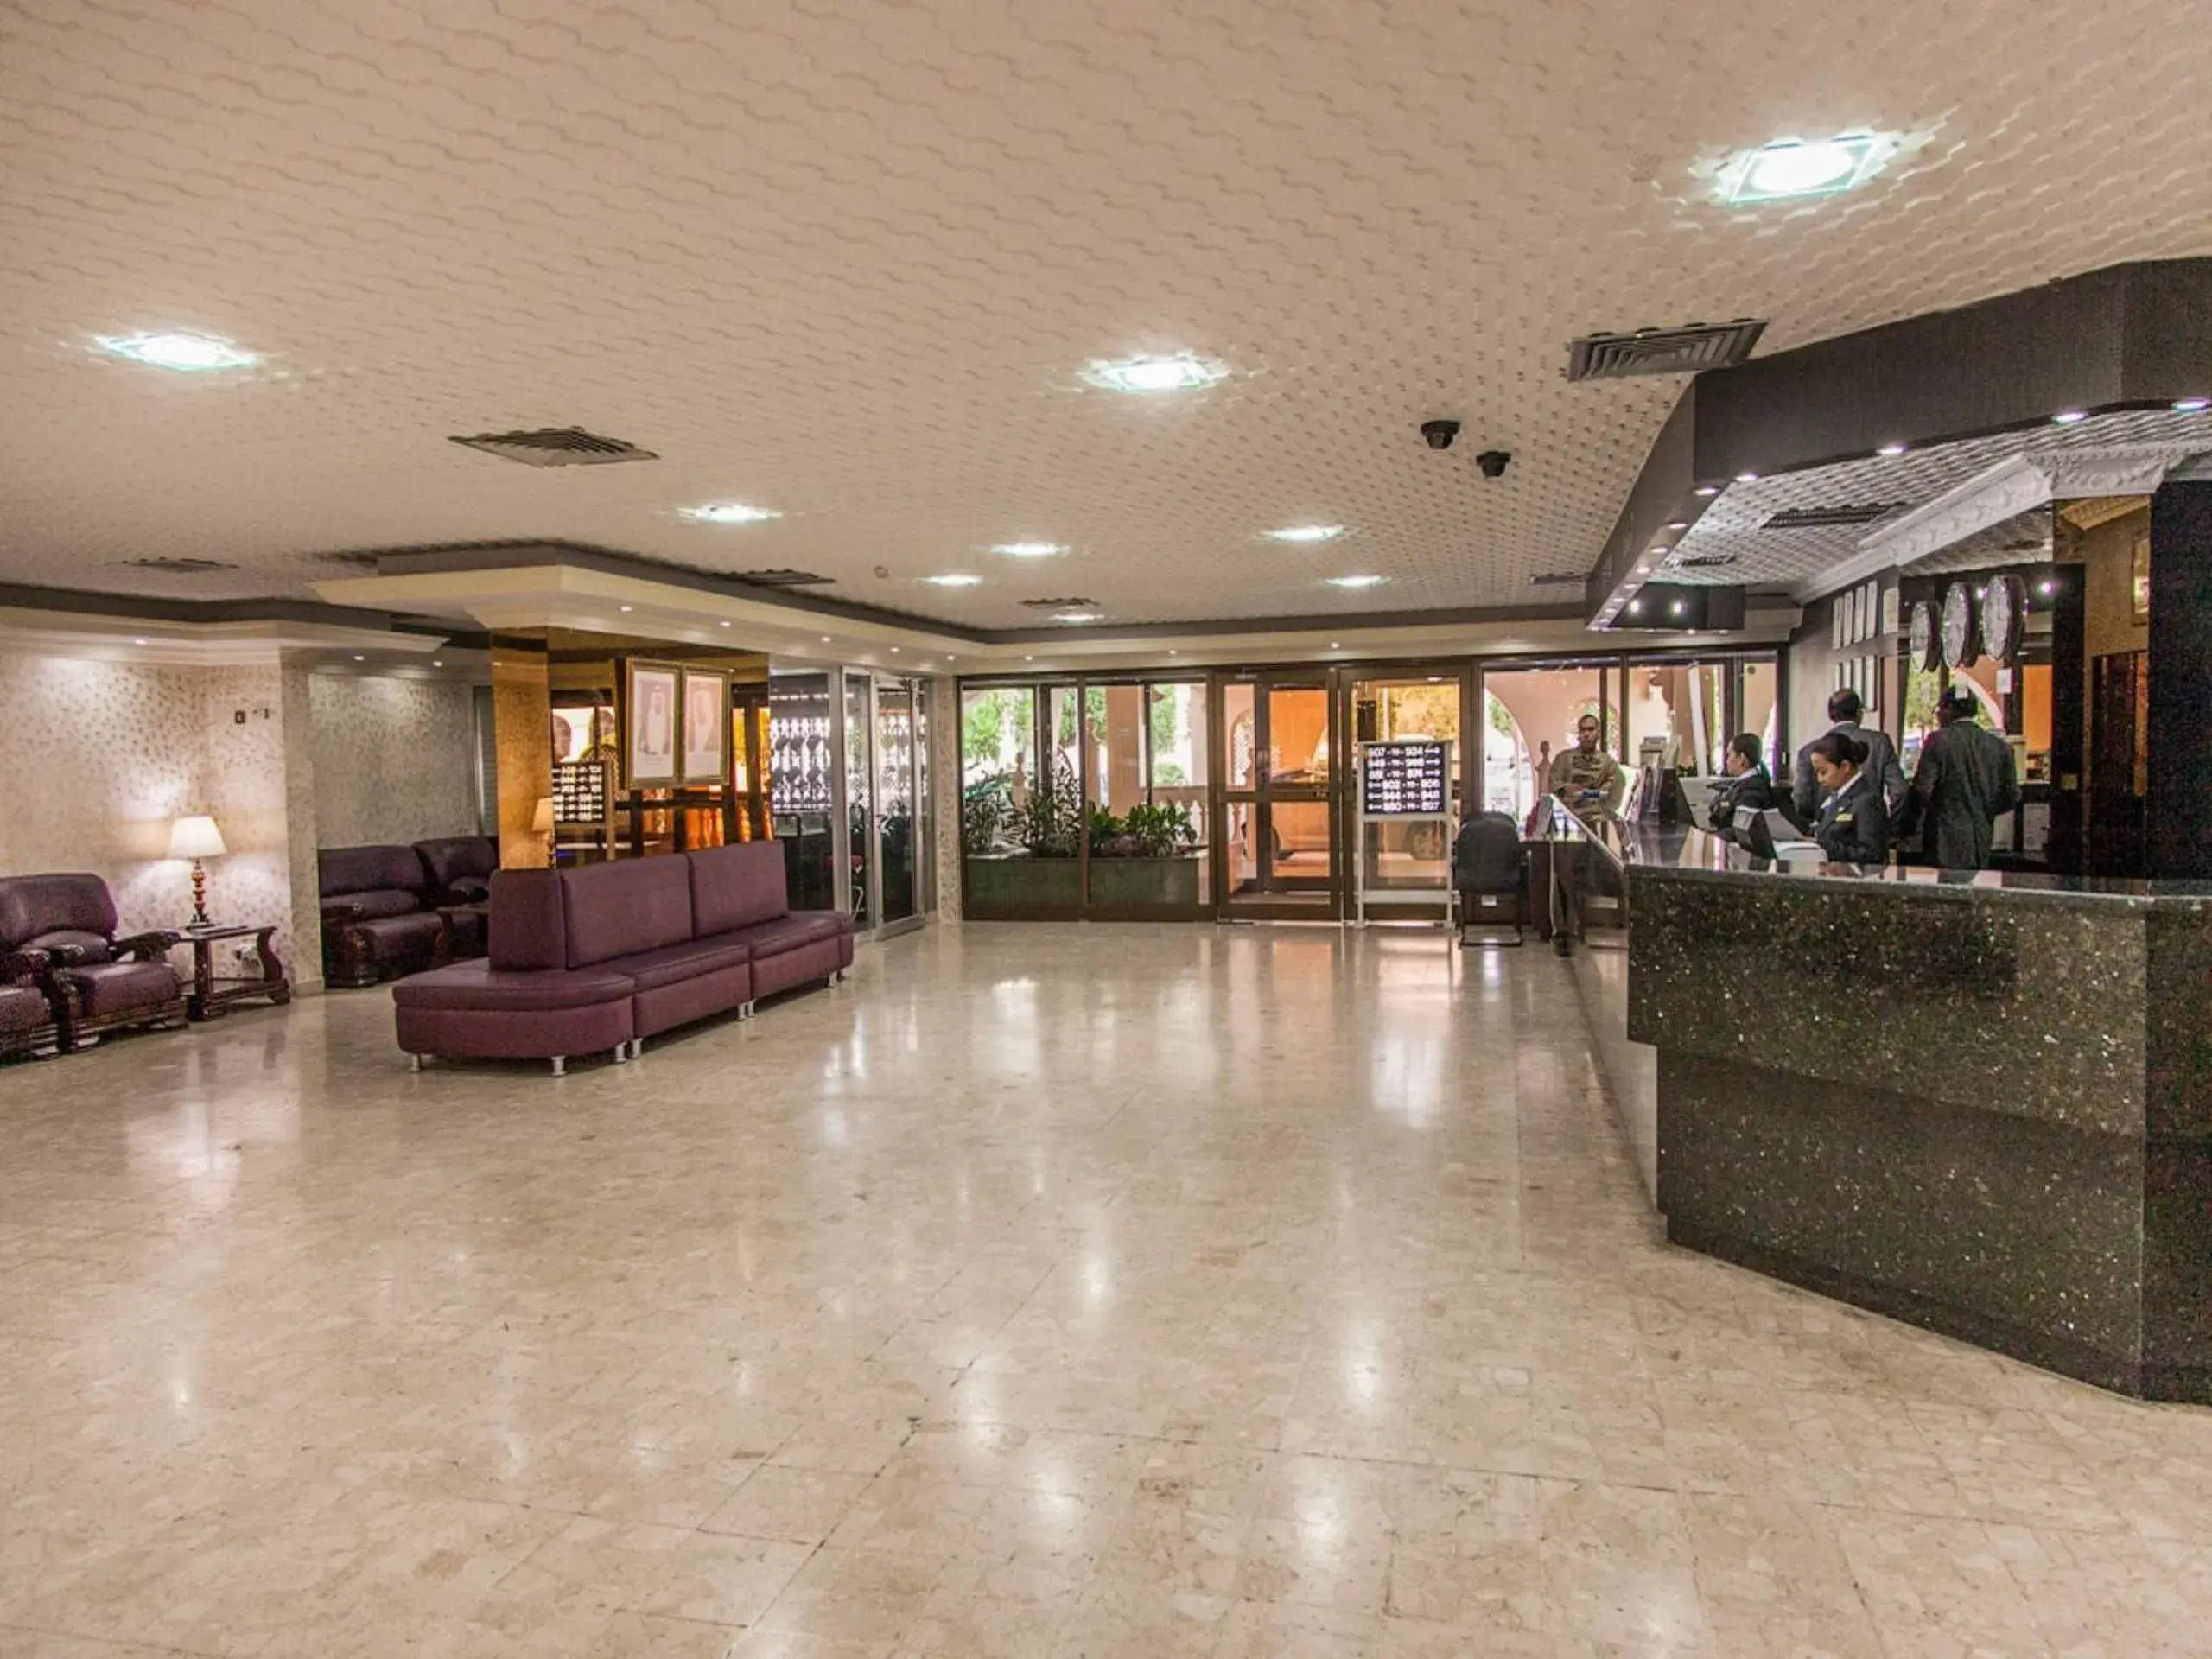 Lobby or reception, Lobby/Reception in Sharjah Carlton Hotel